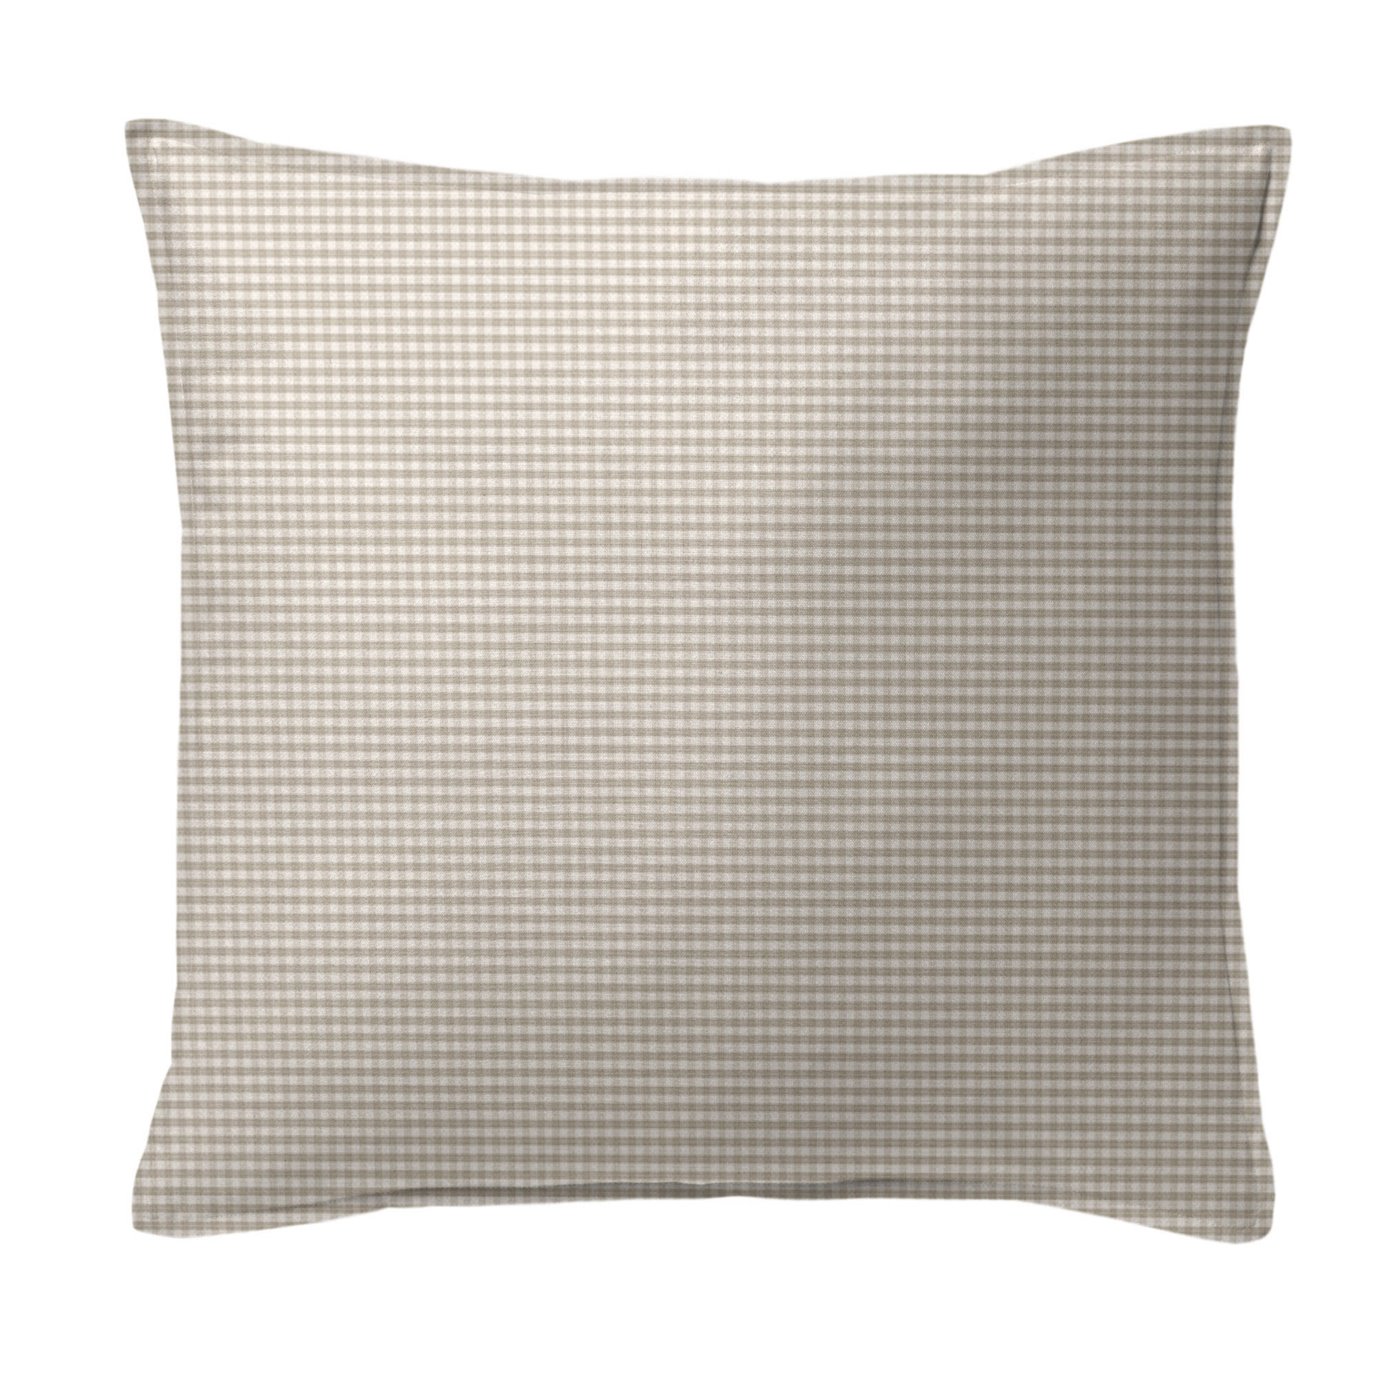 Rockton Check Taupe Decorative Pillow - Size 20" Square